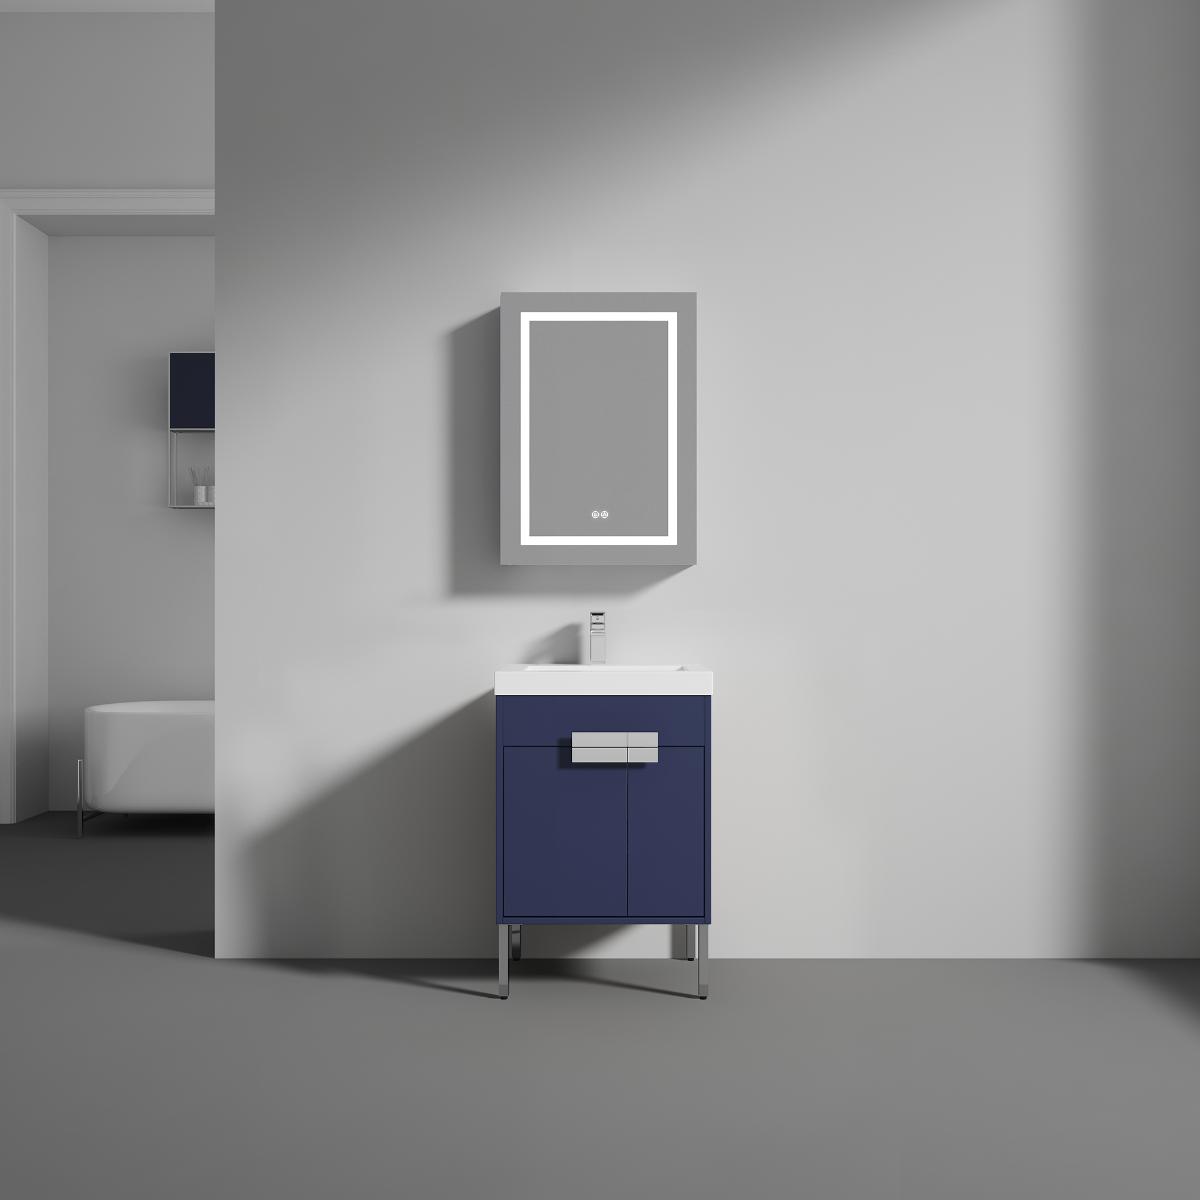 Bari 24" Bathroom Vanity  #size_24"  #color_navy blue